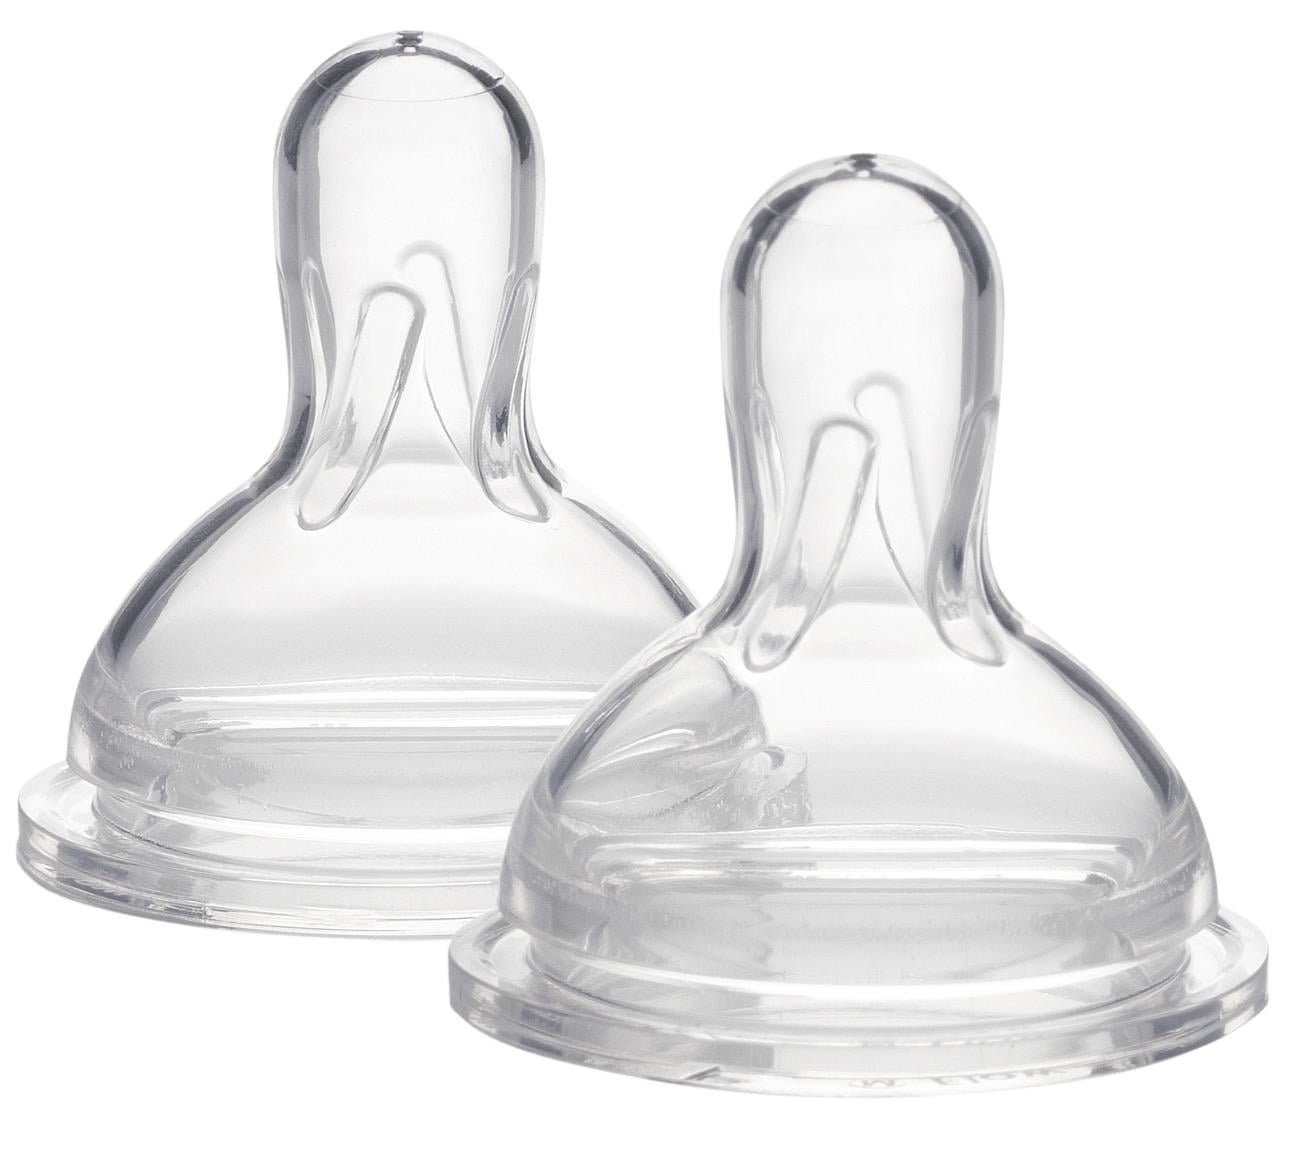 Medela Nipple Medium Flow Wide Base Baby Bottle Feeder 3 Pack NIP NEW 4-12  mnths